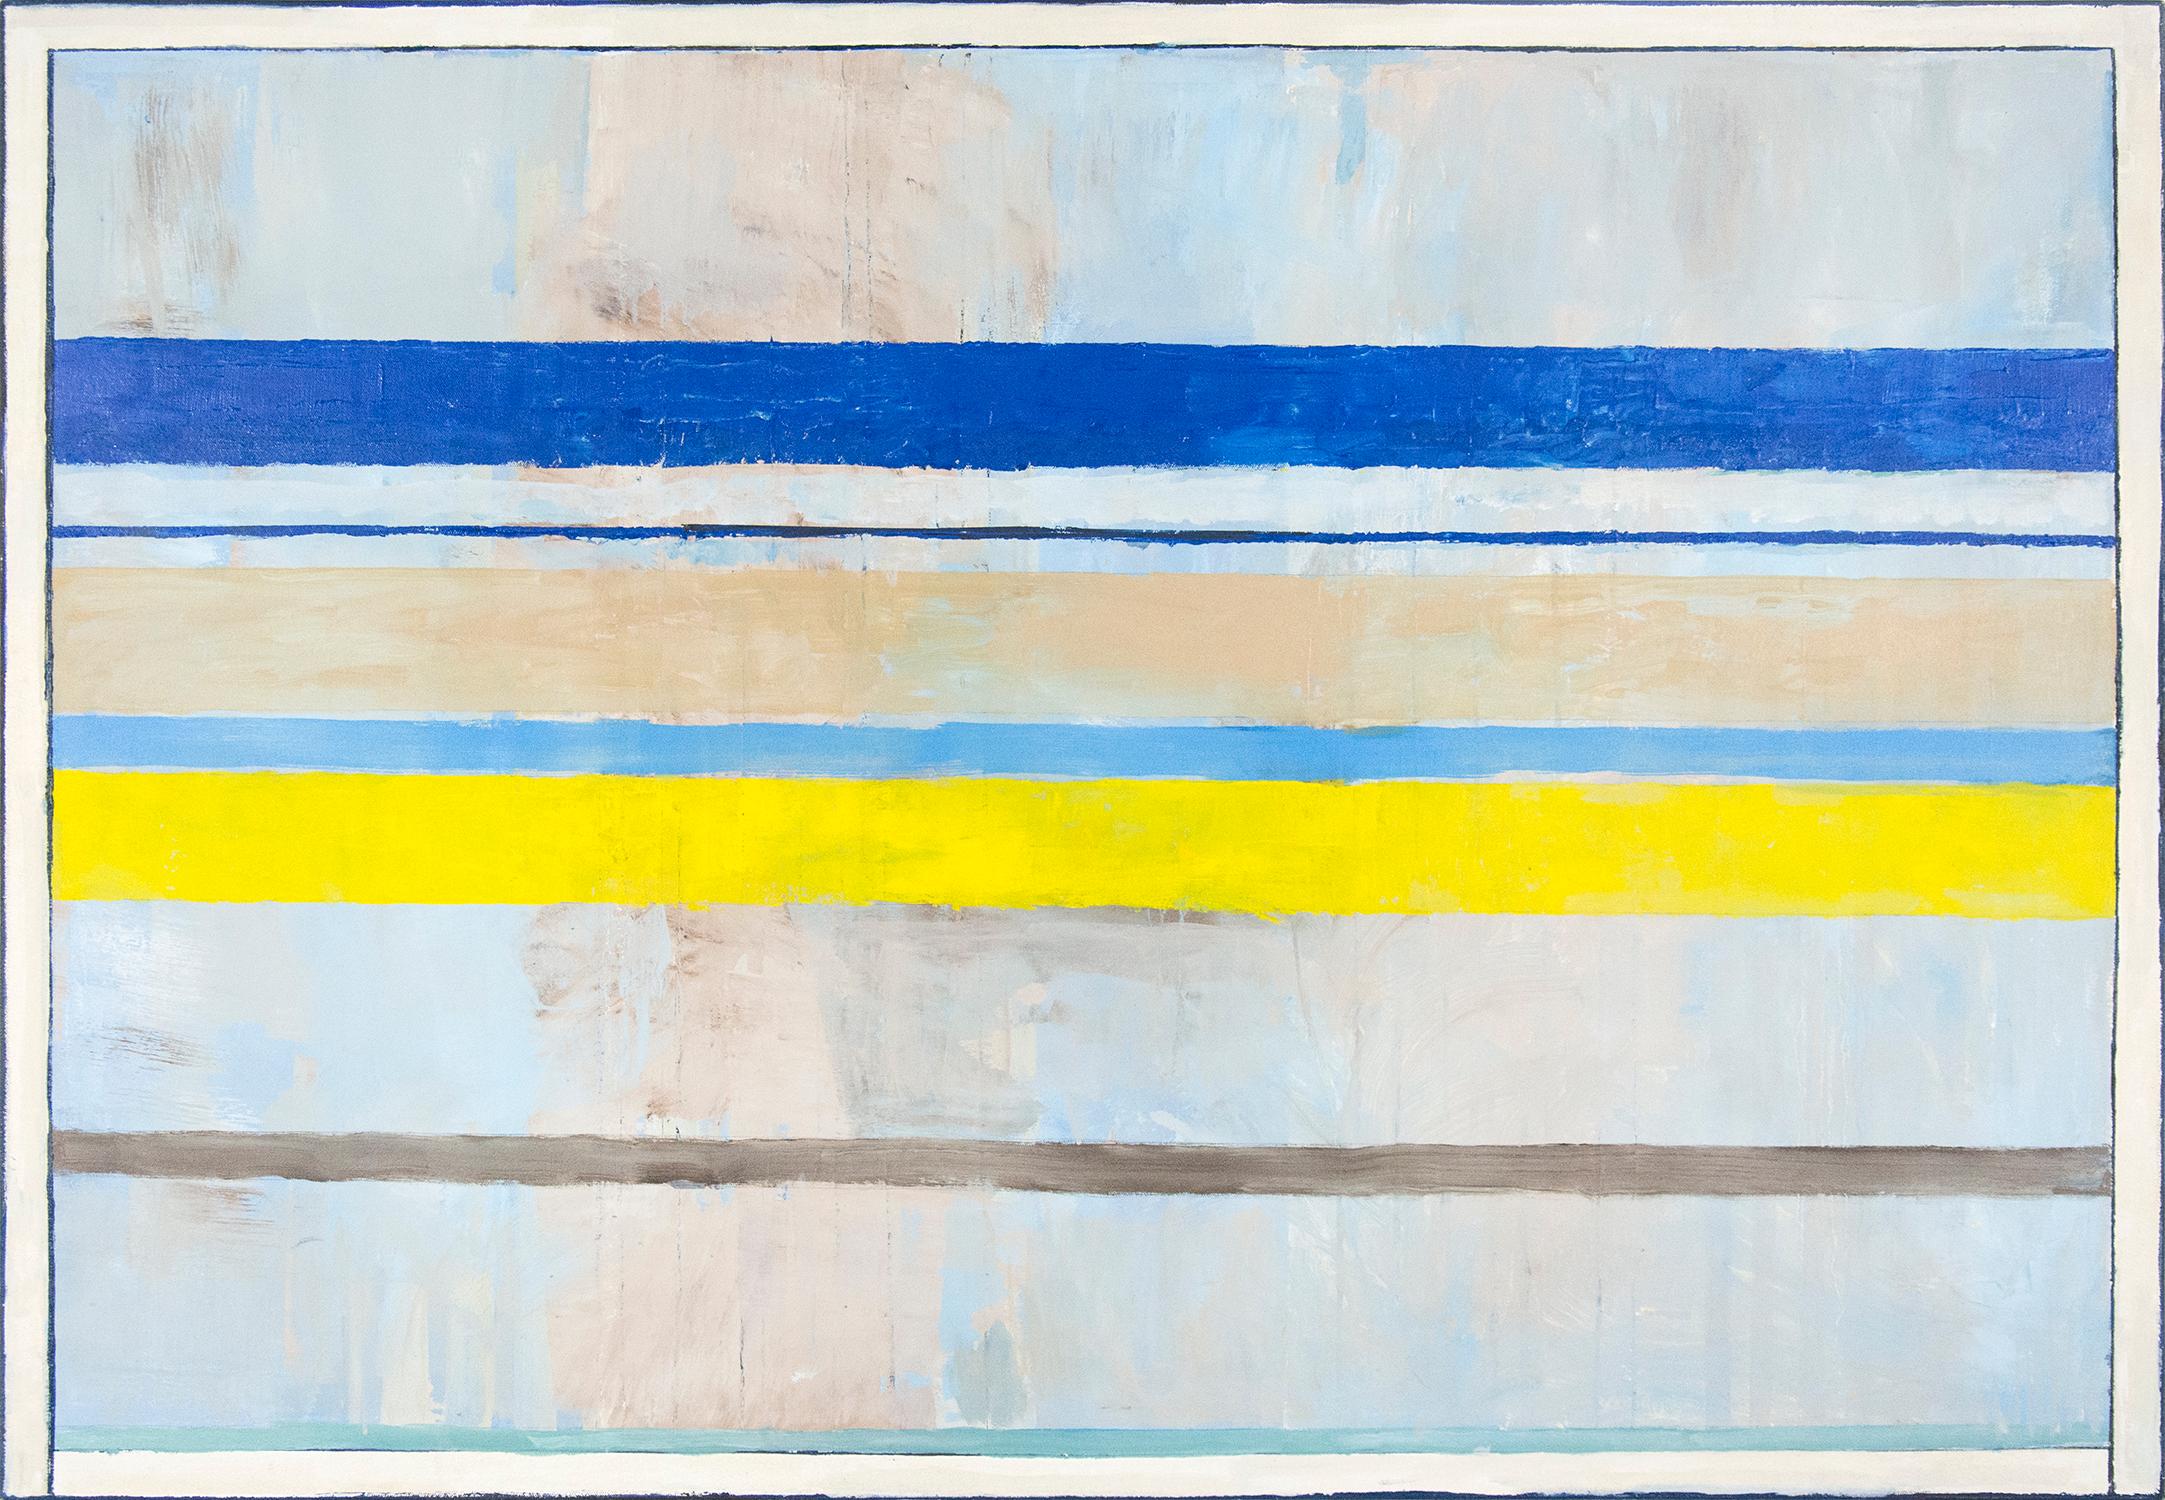 Des bandes picturales de citron, d'aqua, de blanc et de vert vif évoquent la plage, le sable et le ciel dans ce triptyque moderniste de David Sorensen. 

À travers ses compositions modernes et picturales, le célèbre peintre canadien David Sorensen